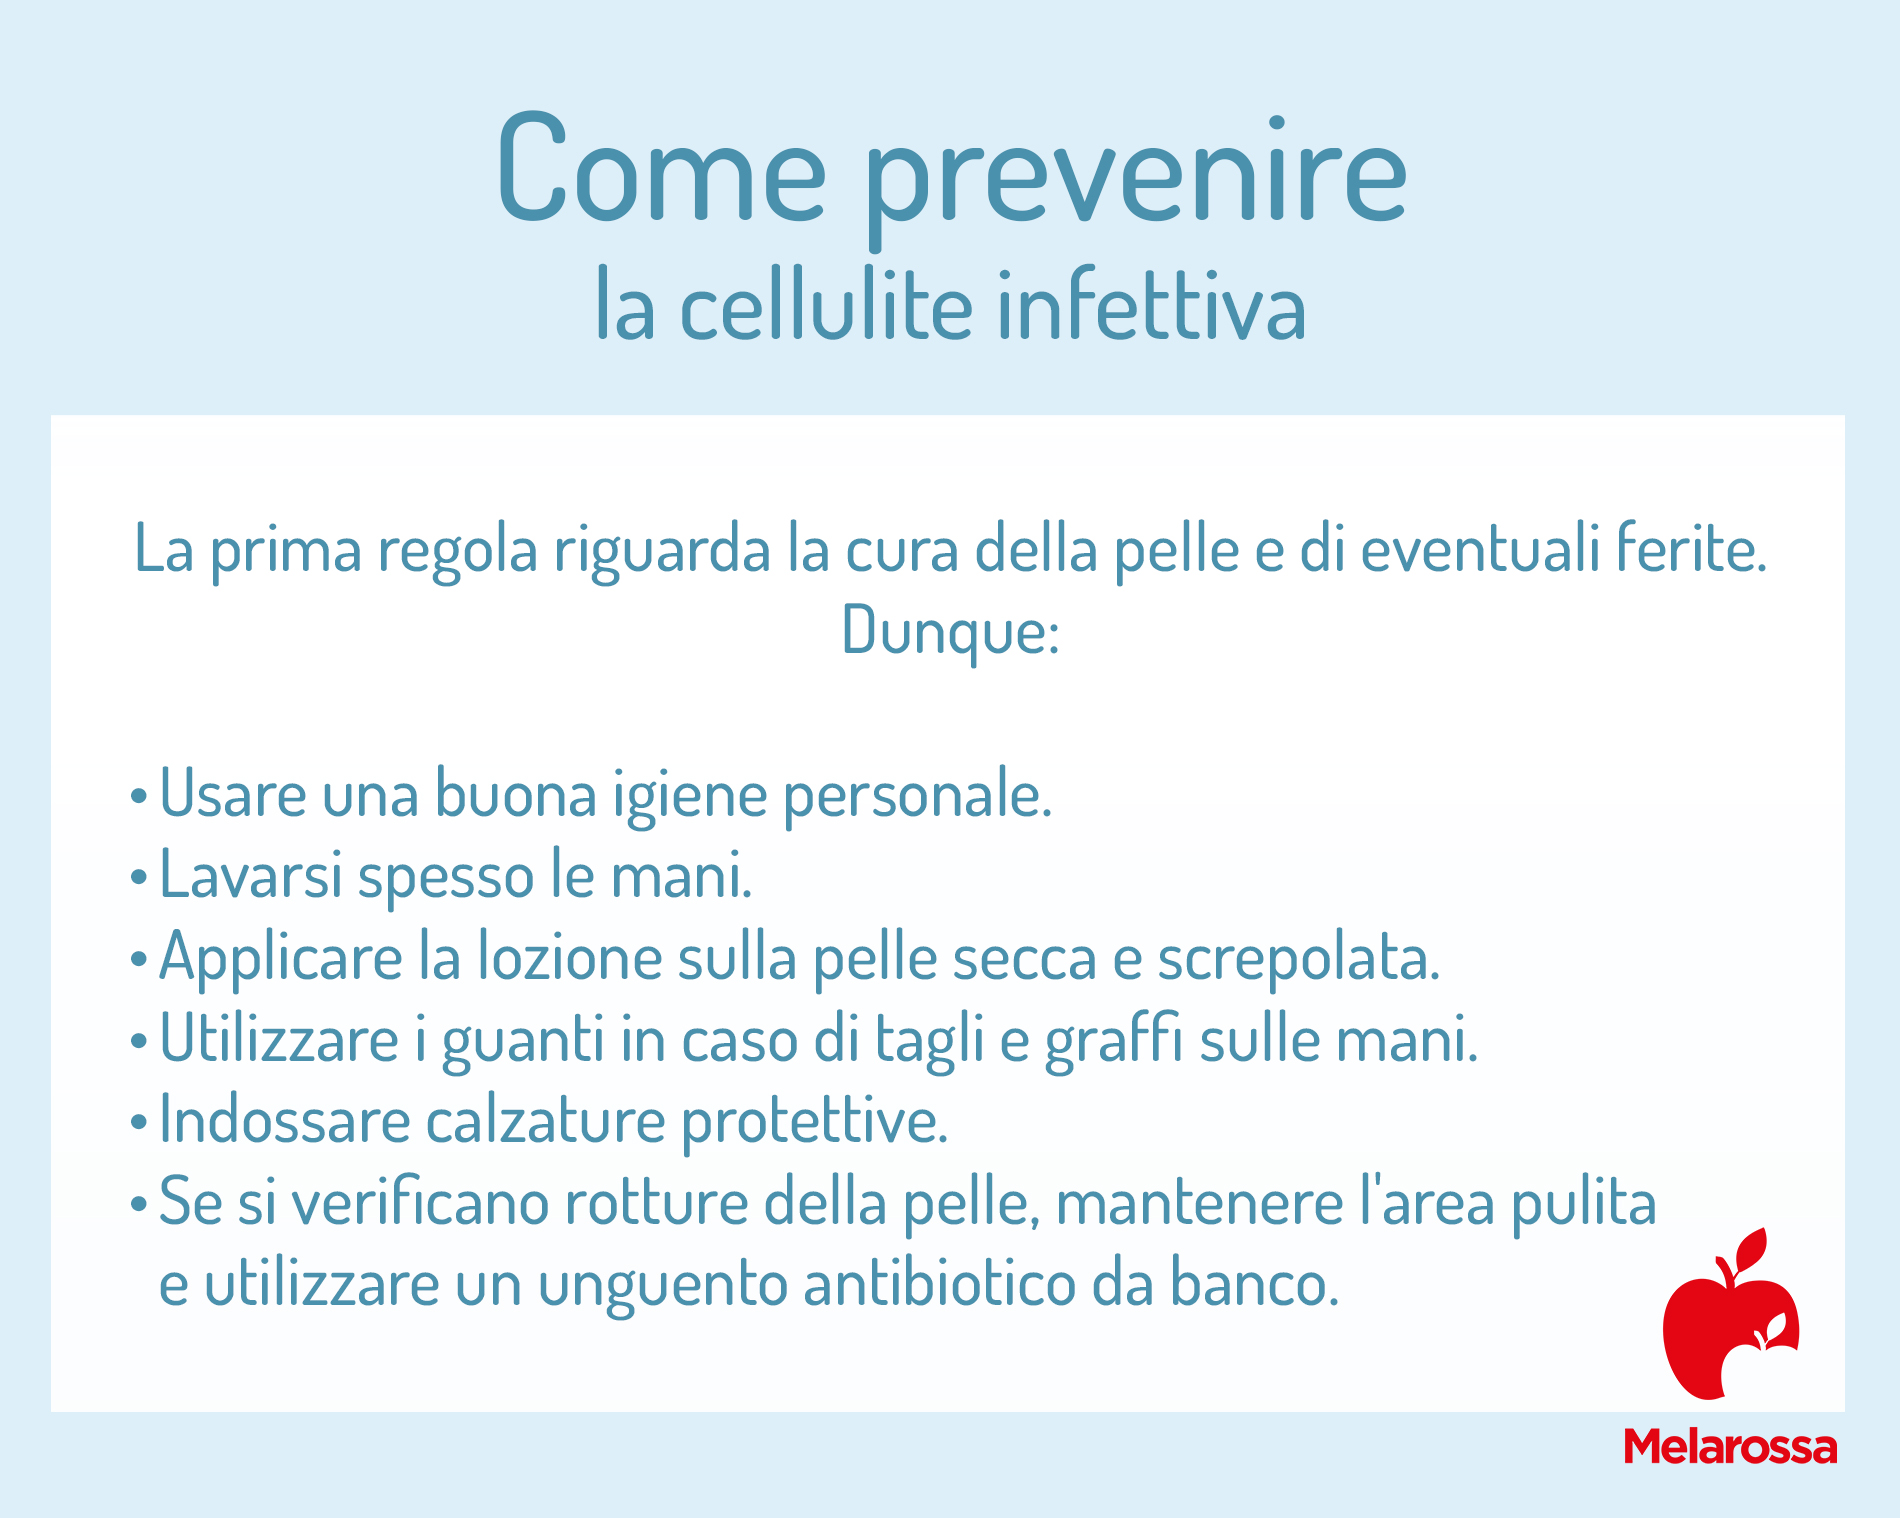 cellulite infettiva: prevenire